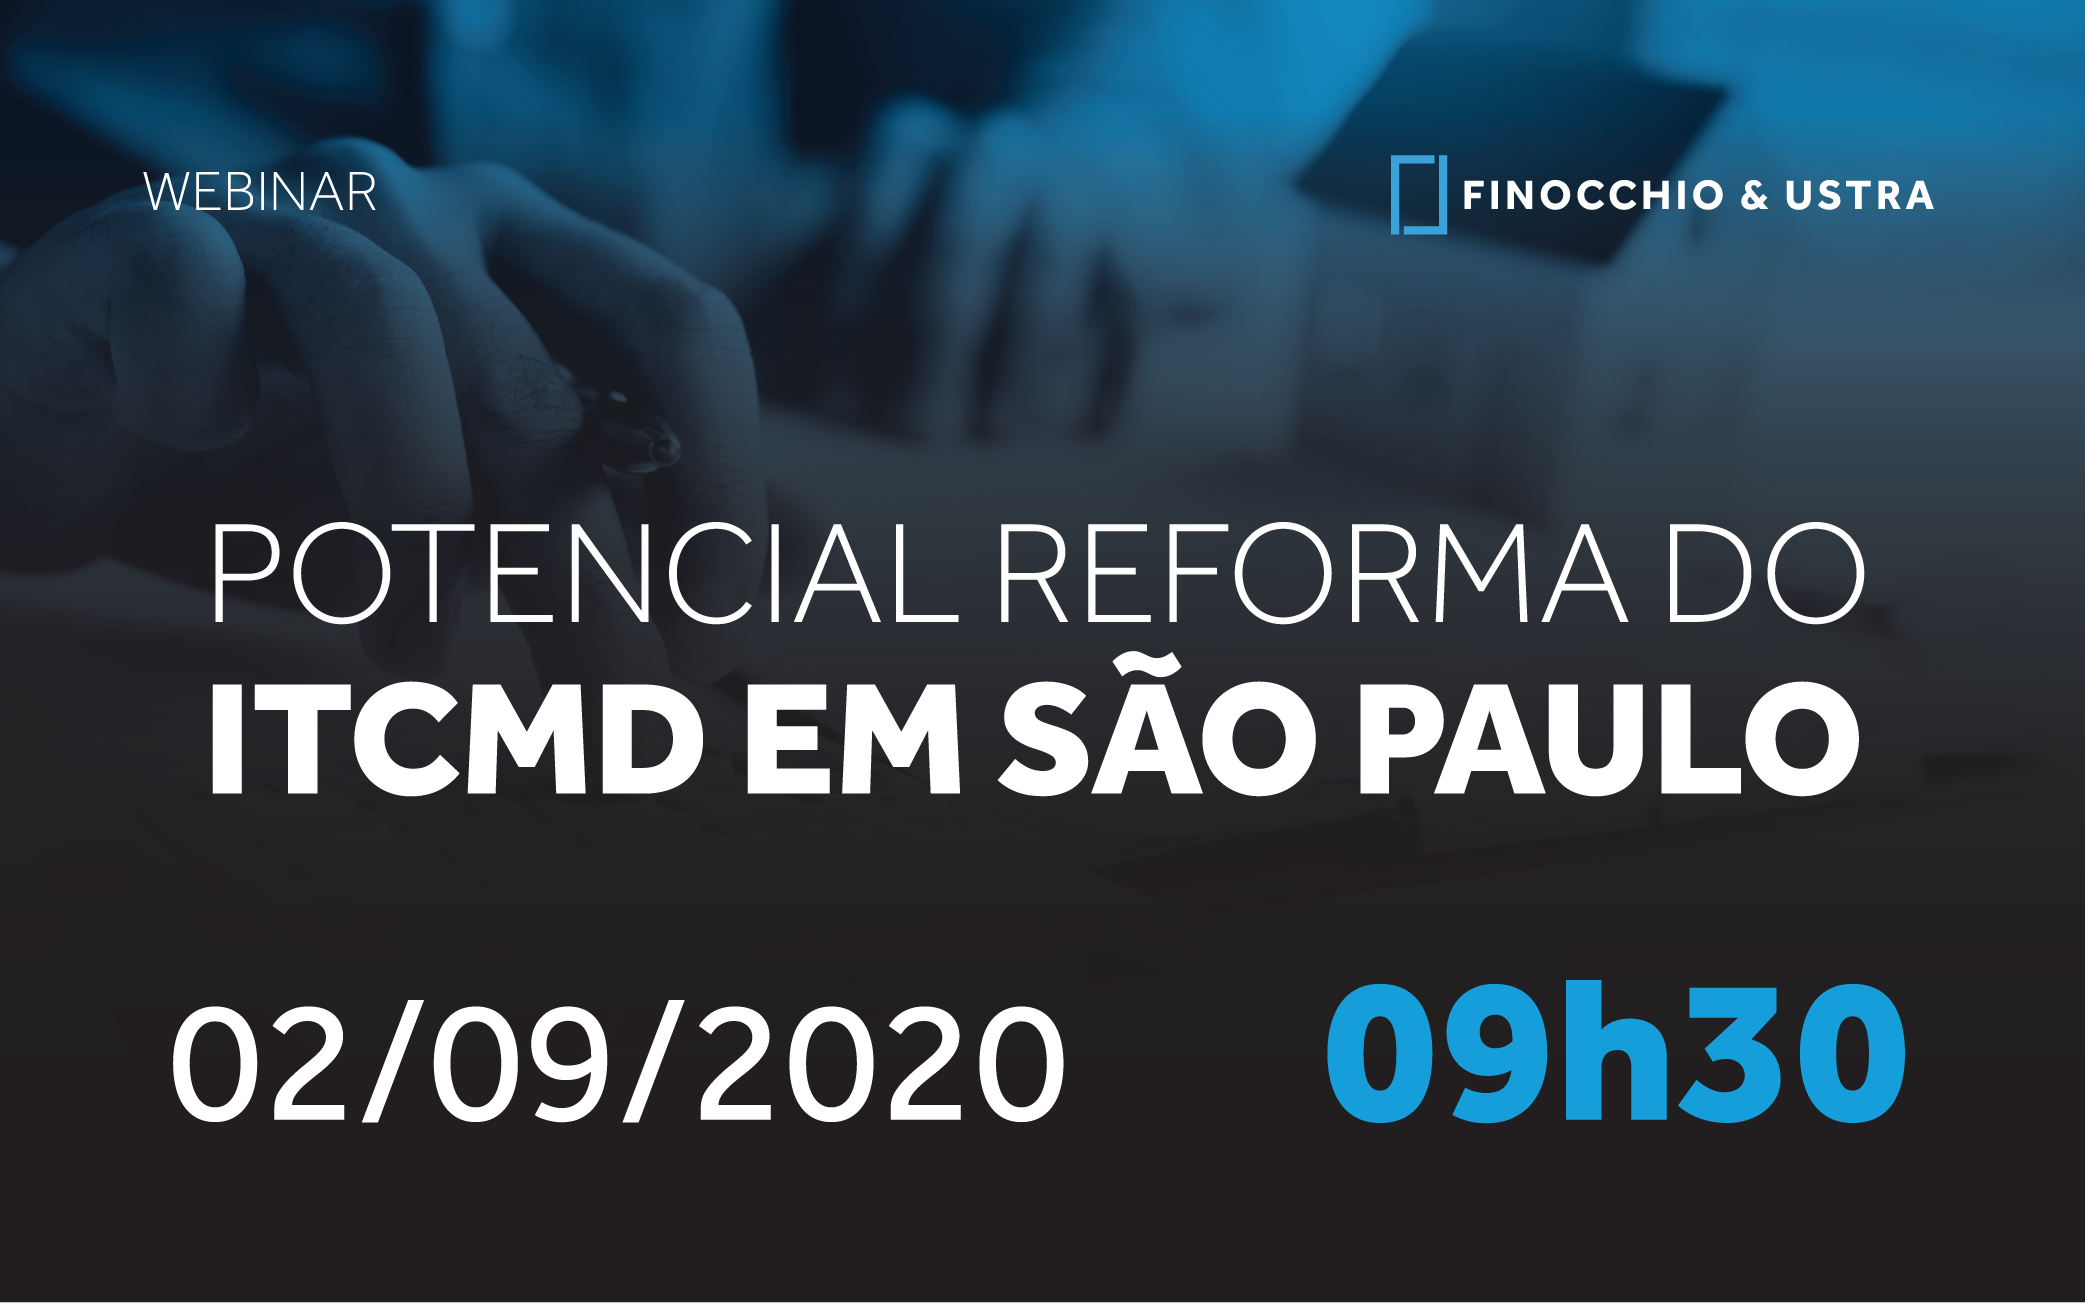 POTENCIAL REFORMA DO ITCMD EM SÃO PAULO